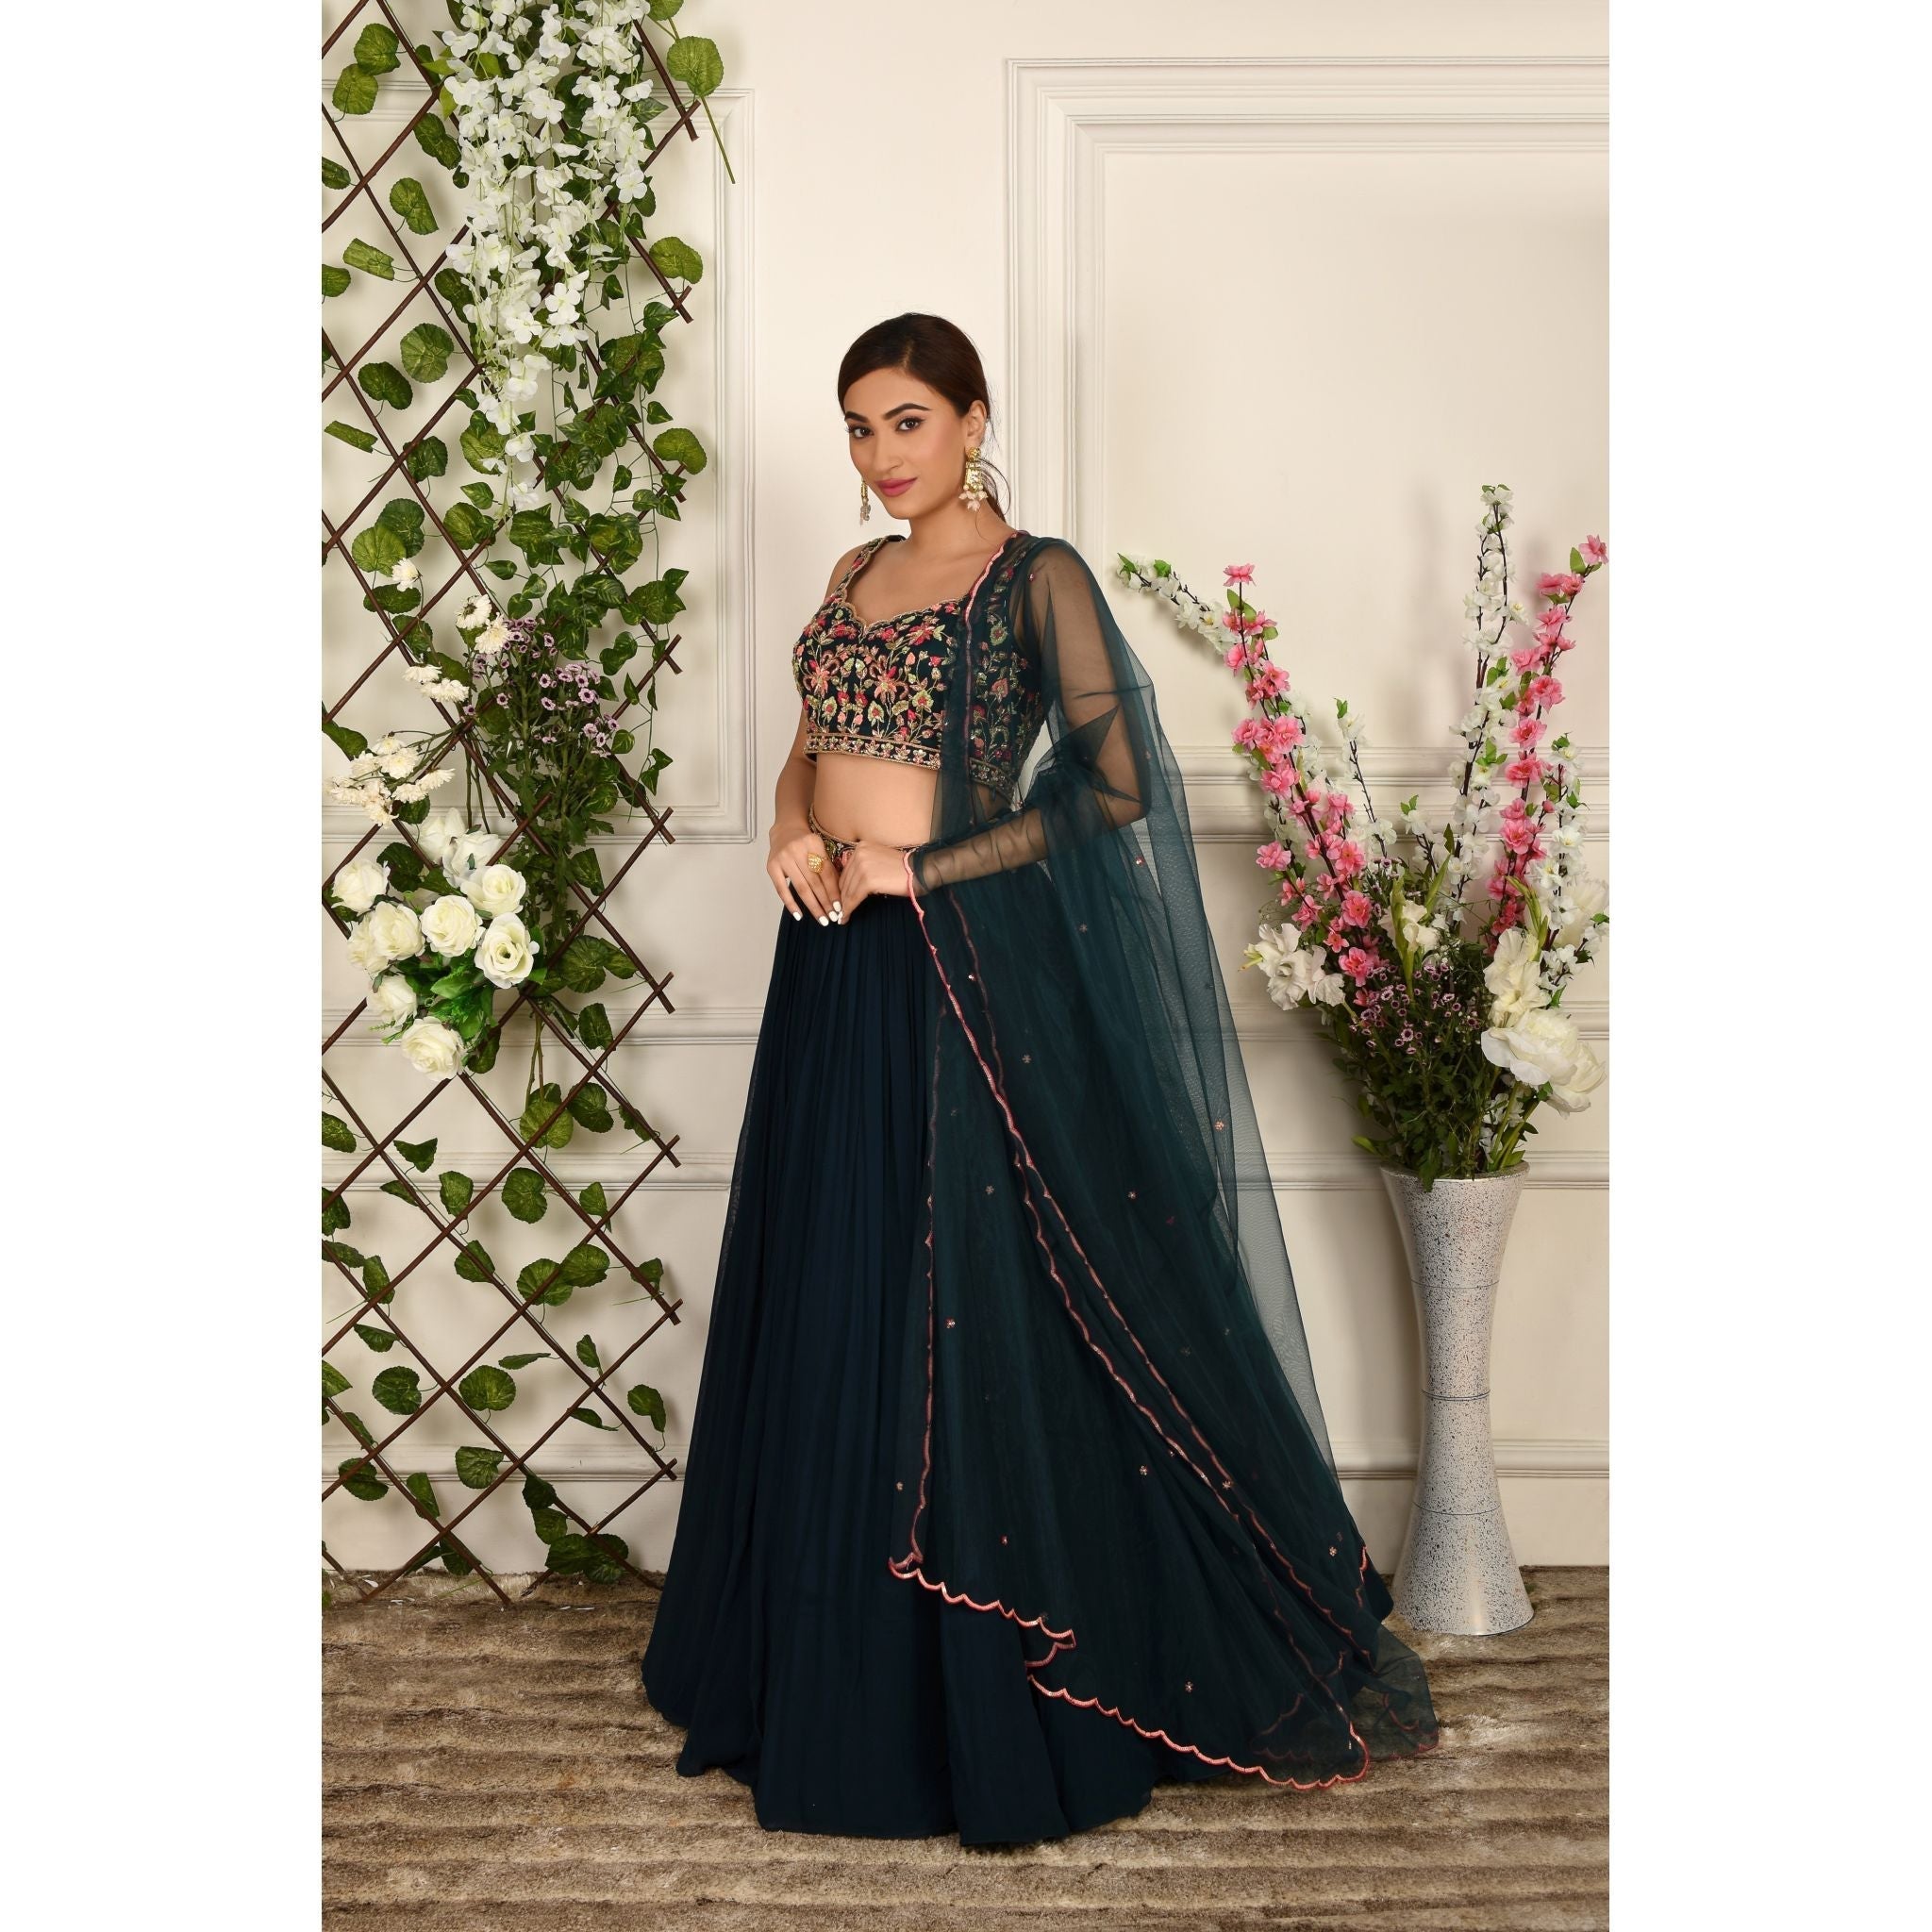 Teal Blue Floral Lehenga Set - Indian Designer Bridal Wedding Outfit